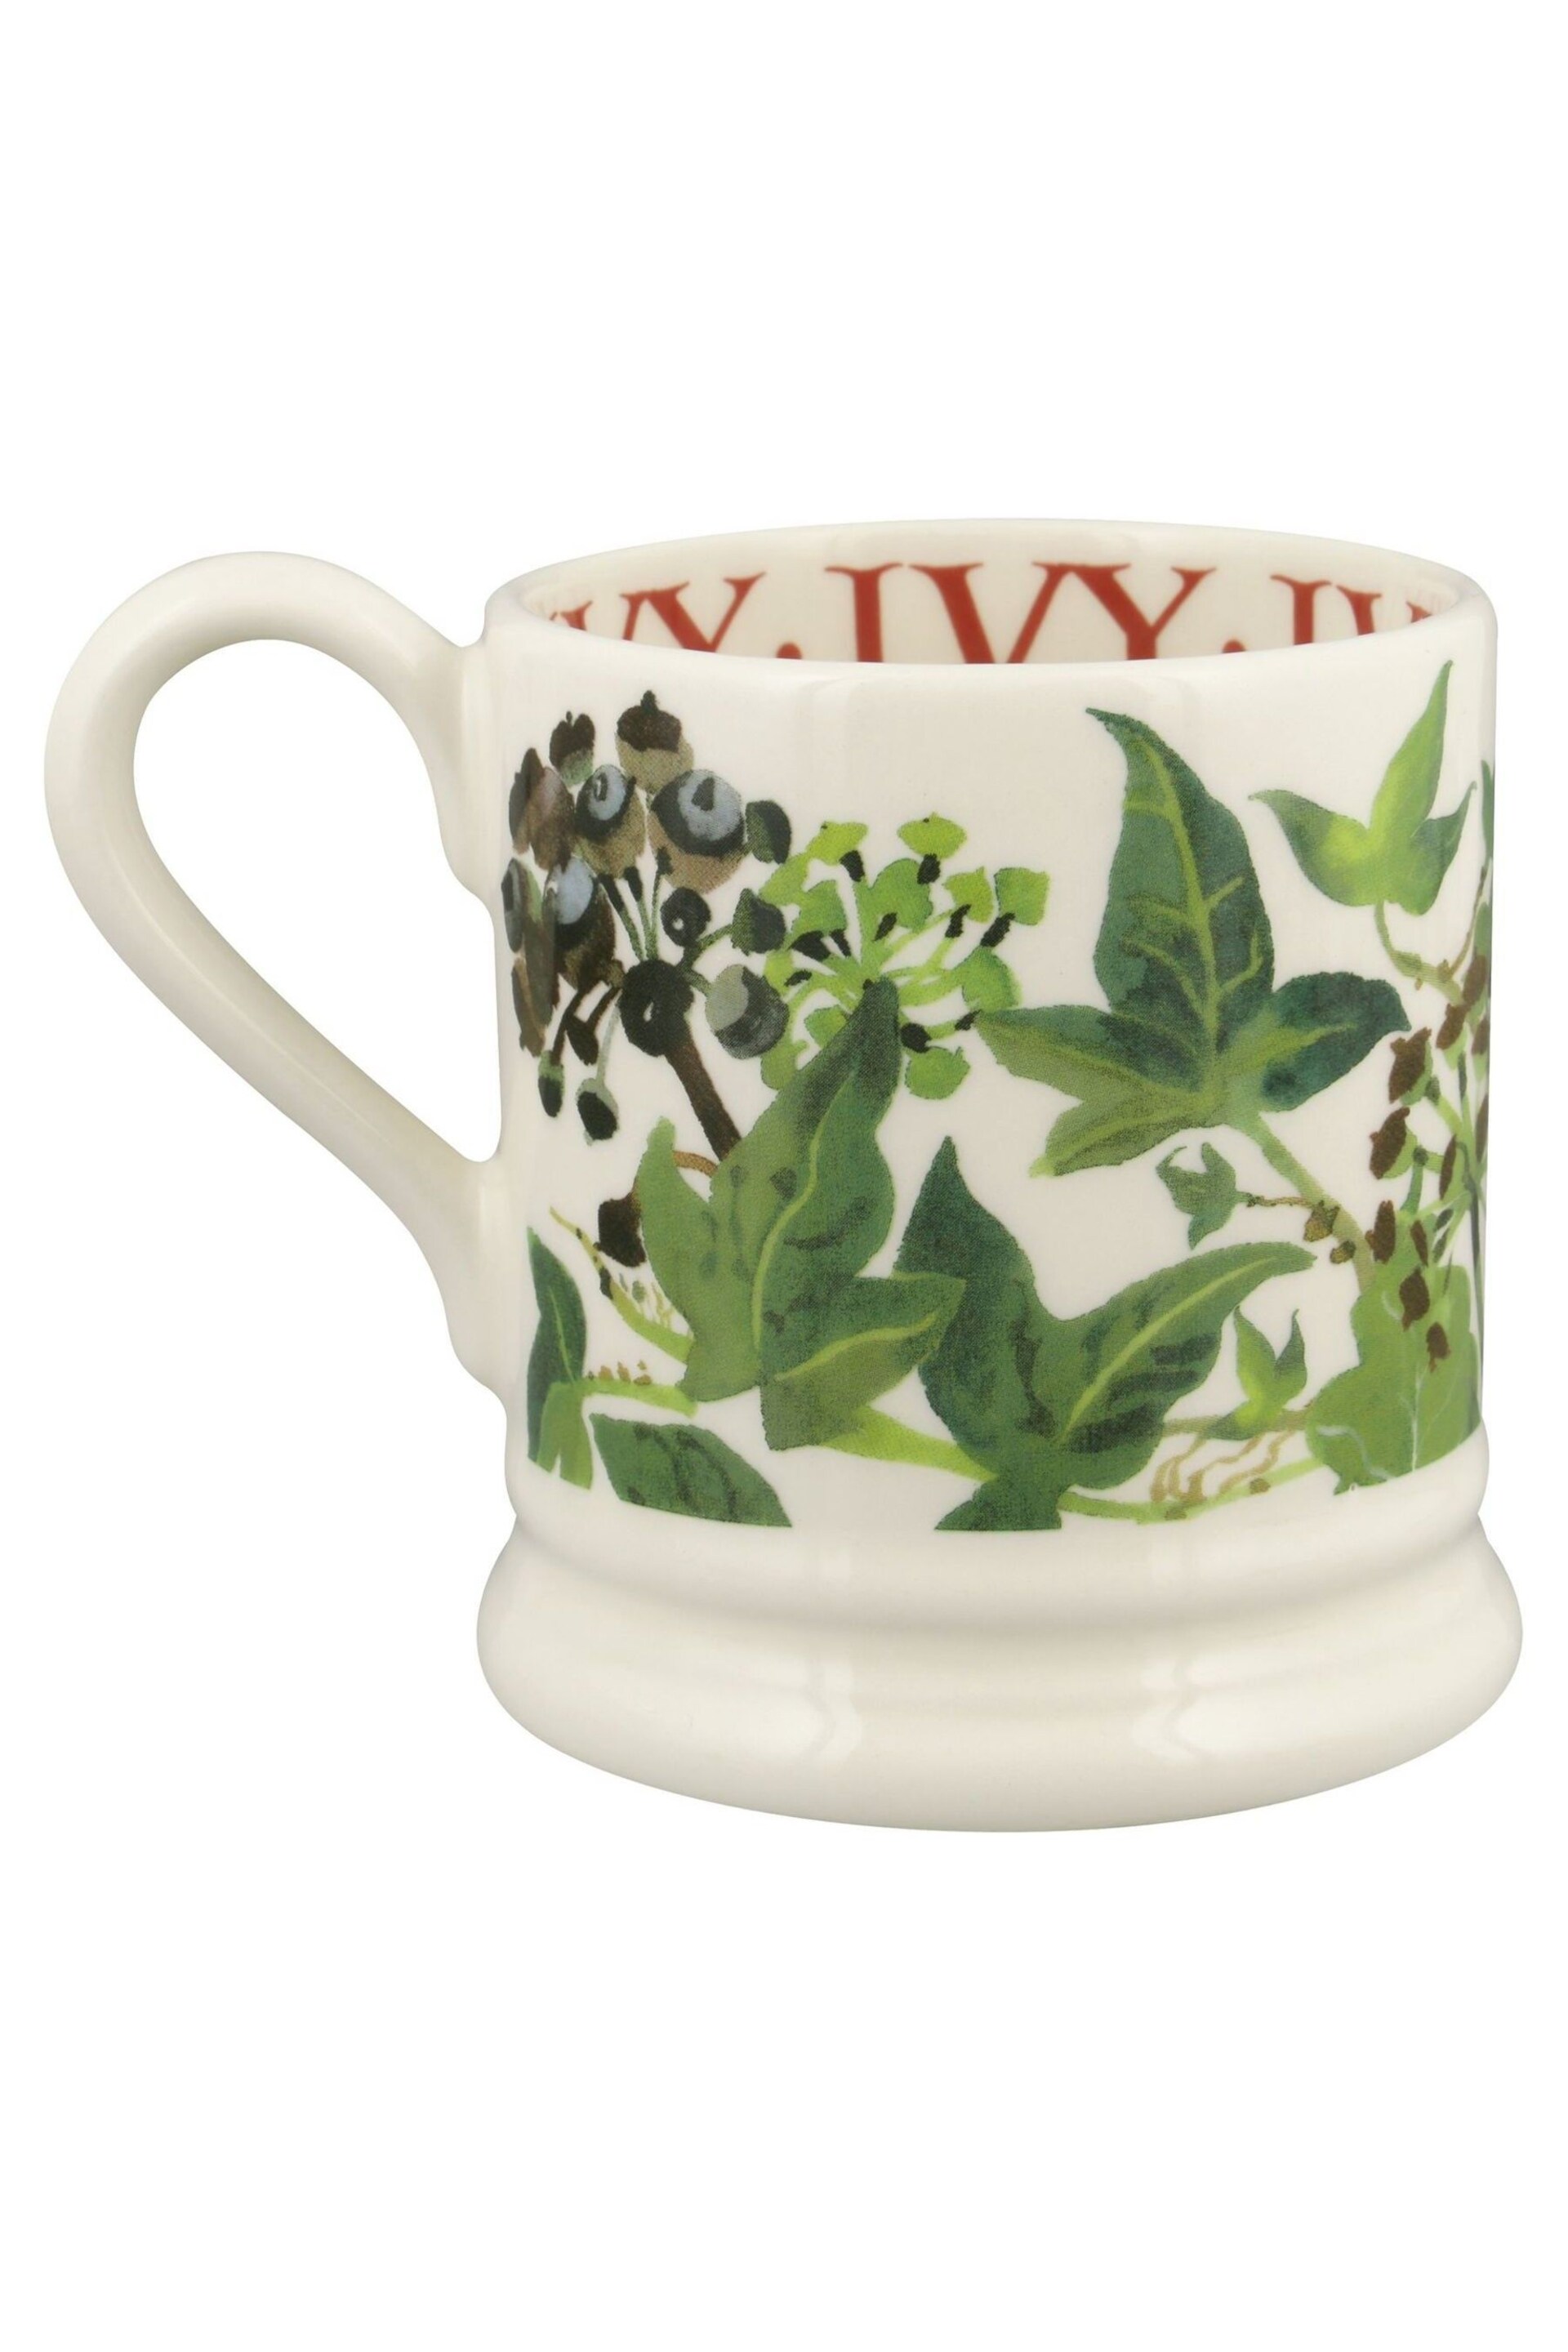 Emma Bridgewater Set of 2 Cream Holly & Ivy 1/2 Pint Mugs Boxed - Image 6 of 6